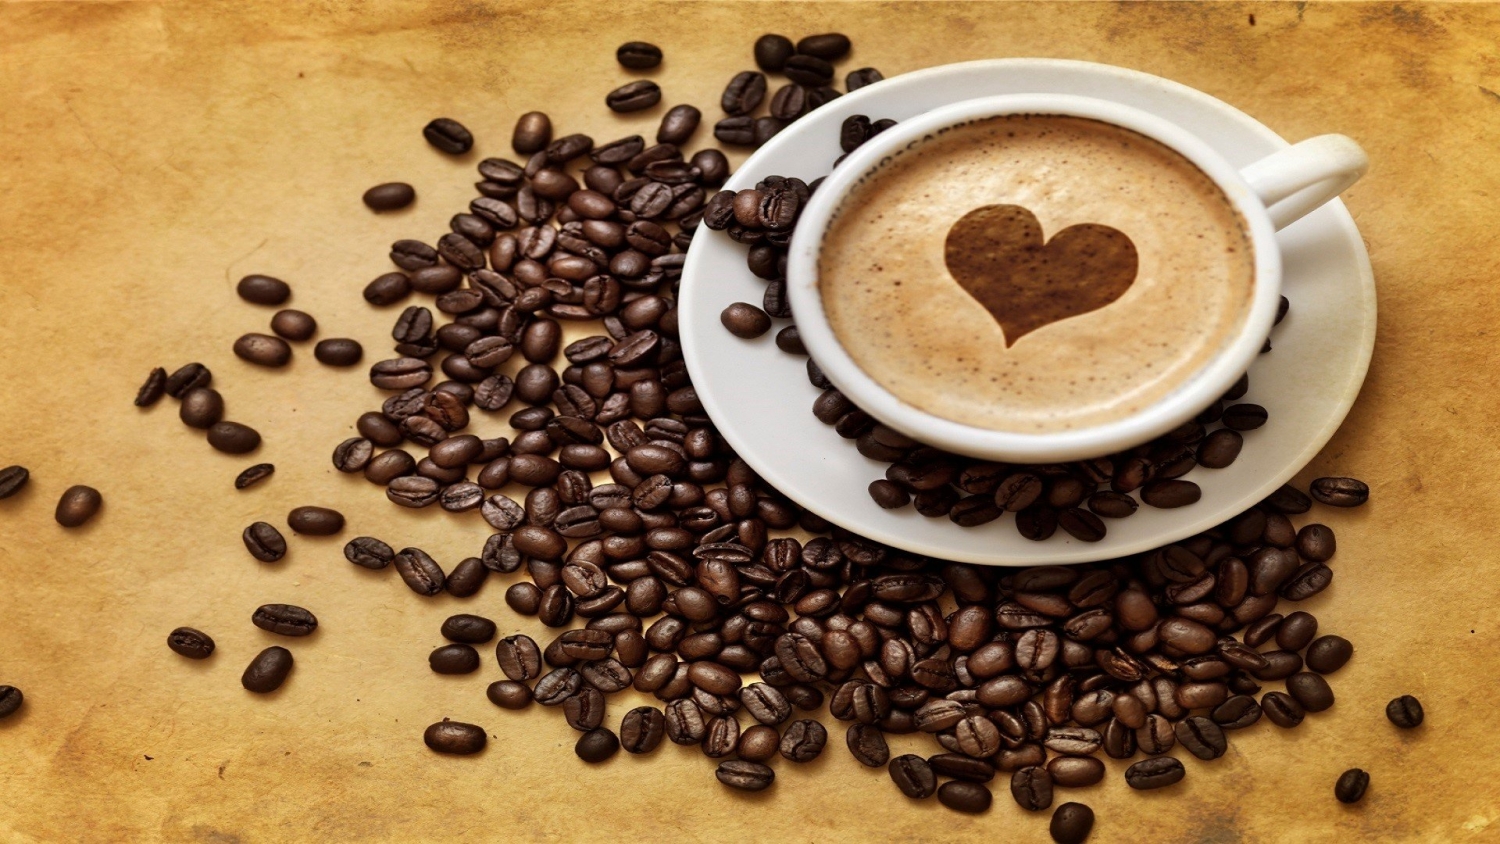 Giá cà phê hôm nay 13/2: Tăng nhẹ tại một số địa phương